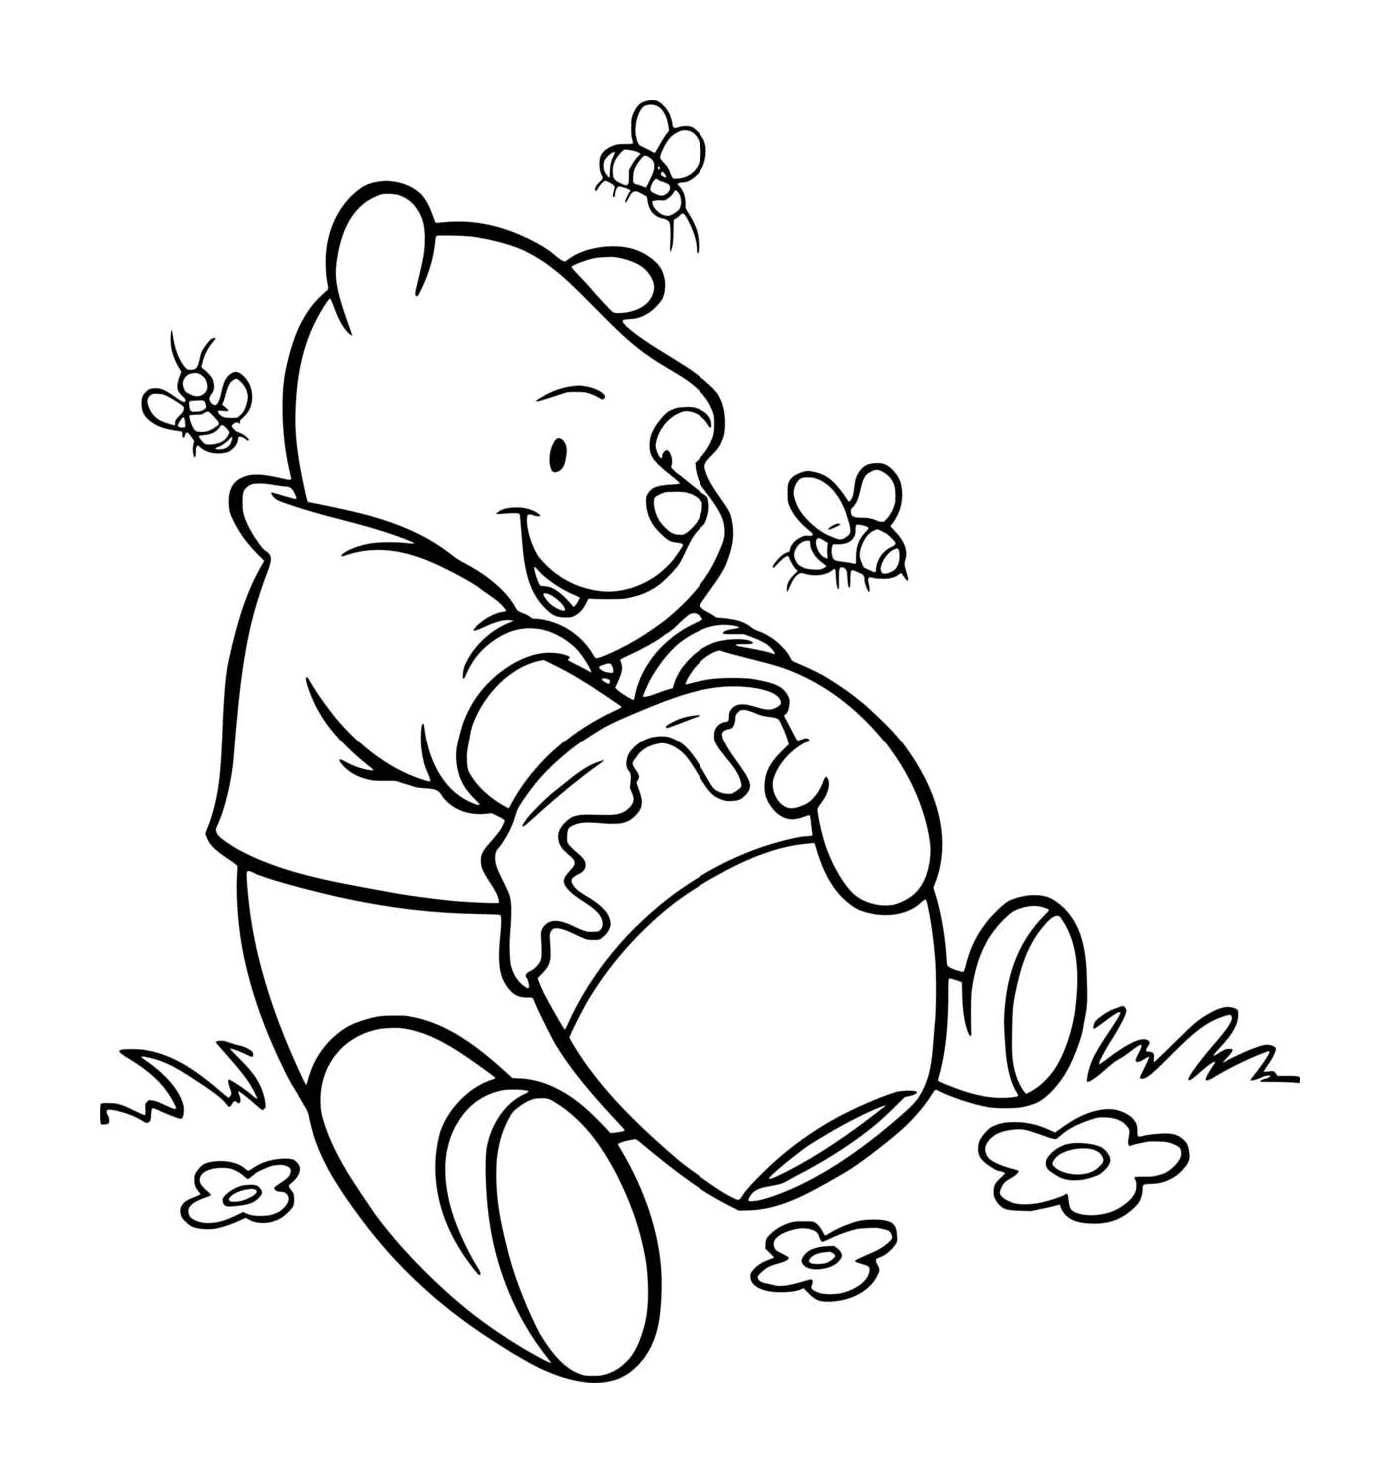  Winnie keeps eating honey 